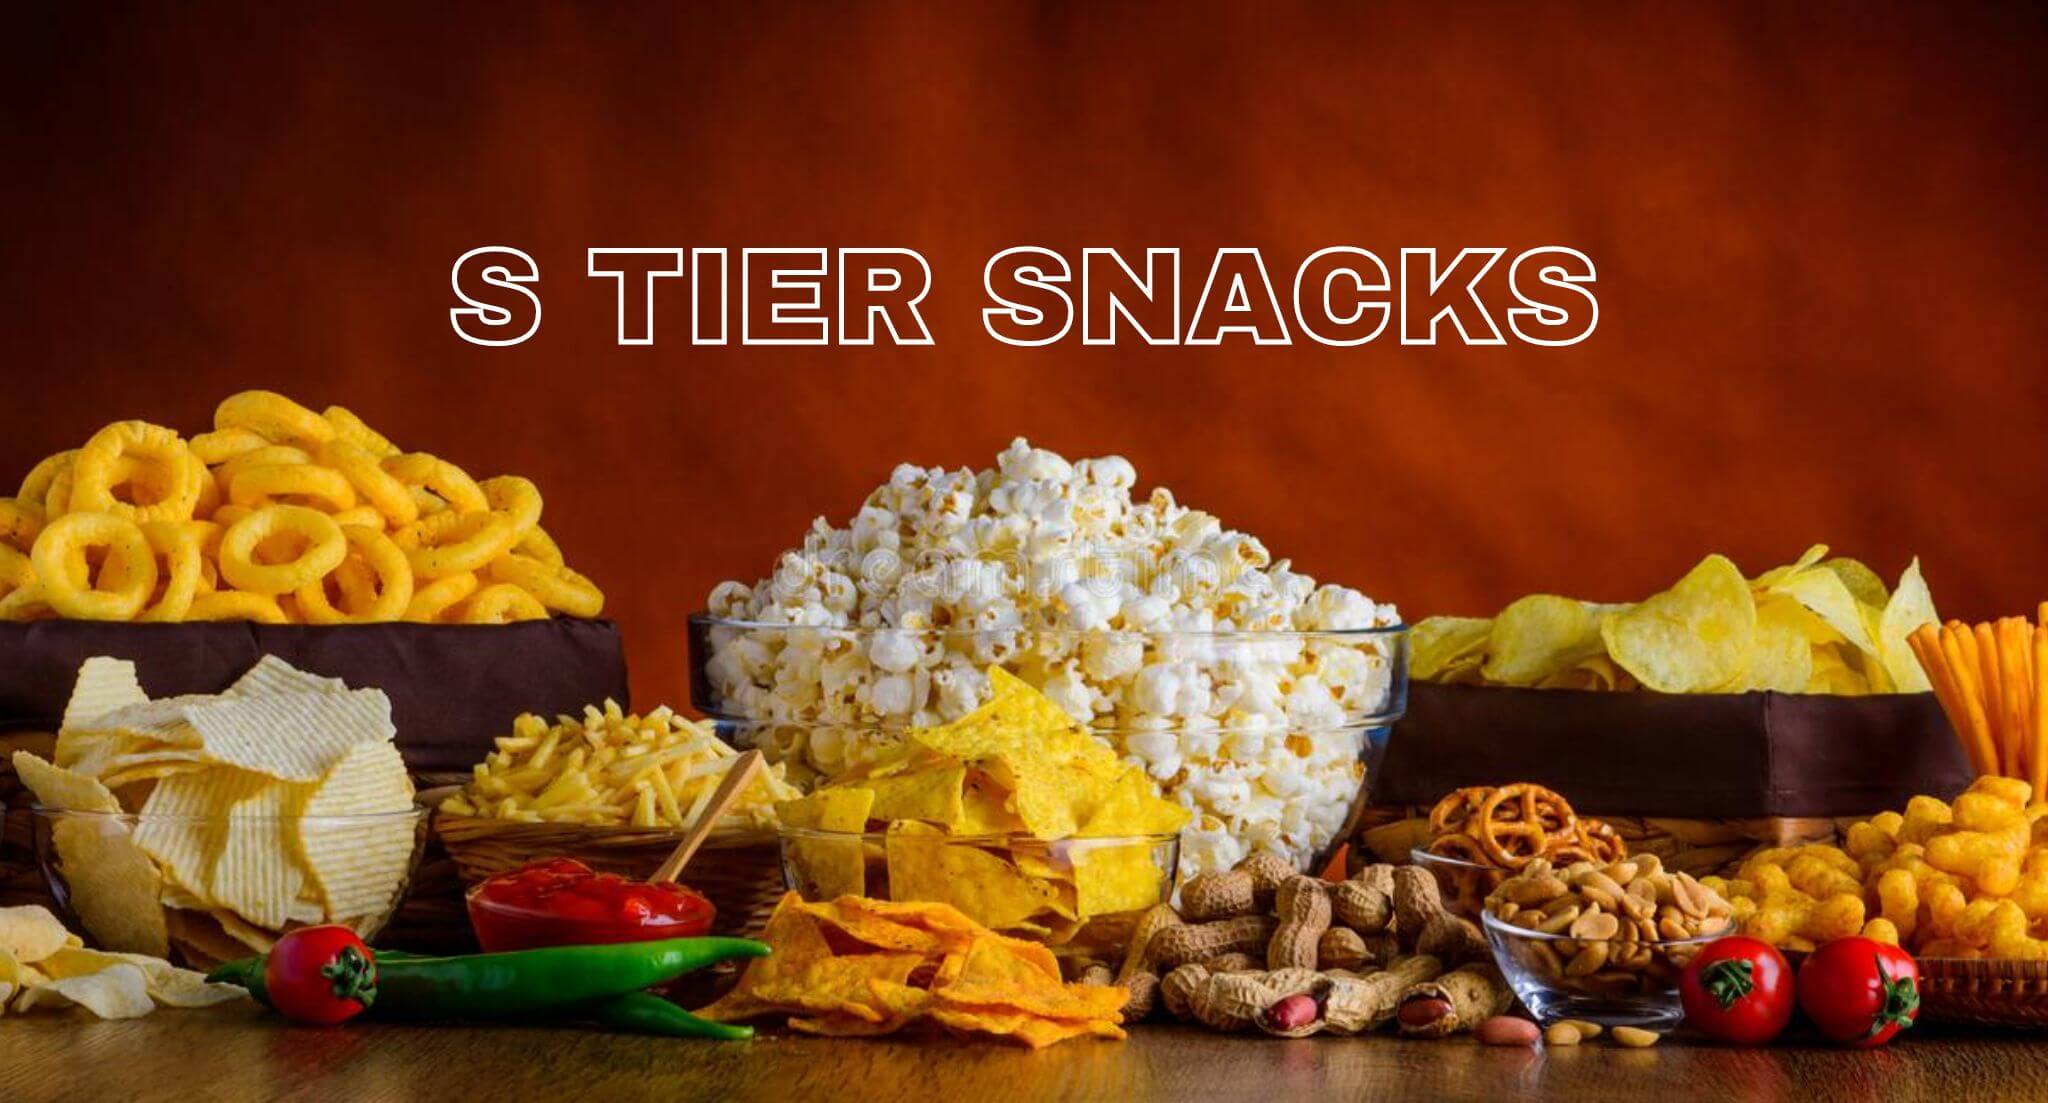 S-tier of snacks